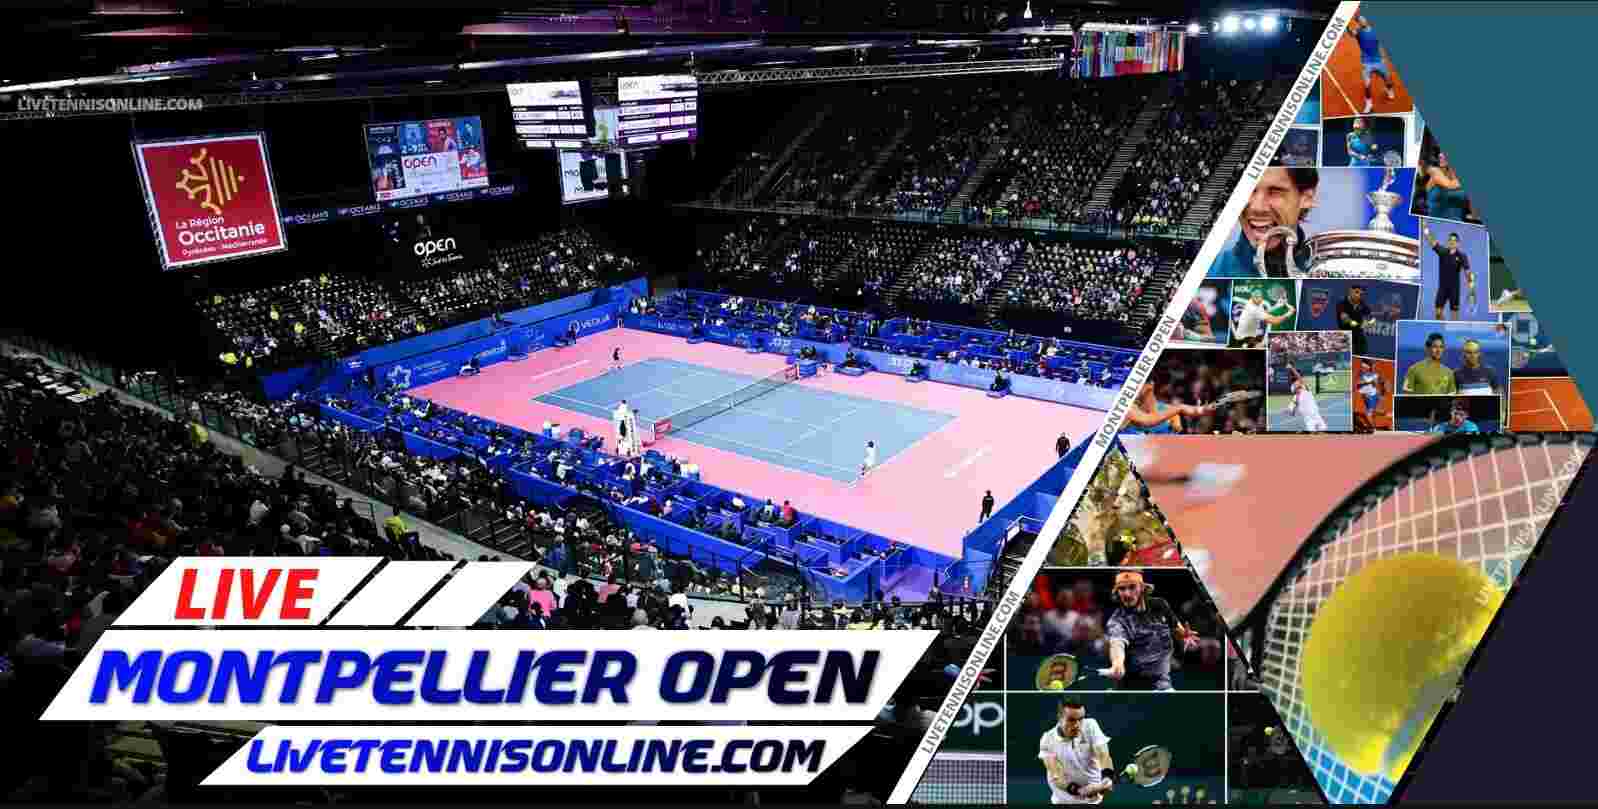 Montpellier Open Tennis live online Stream